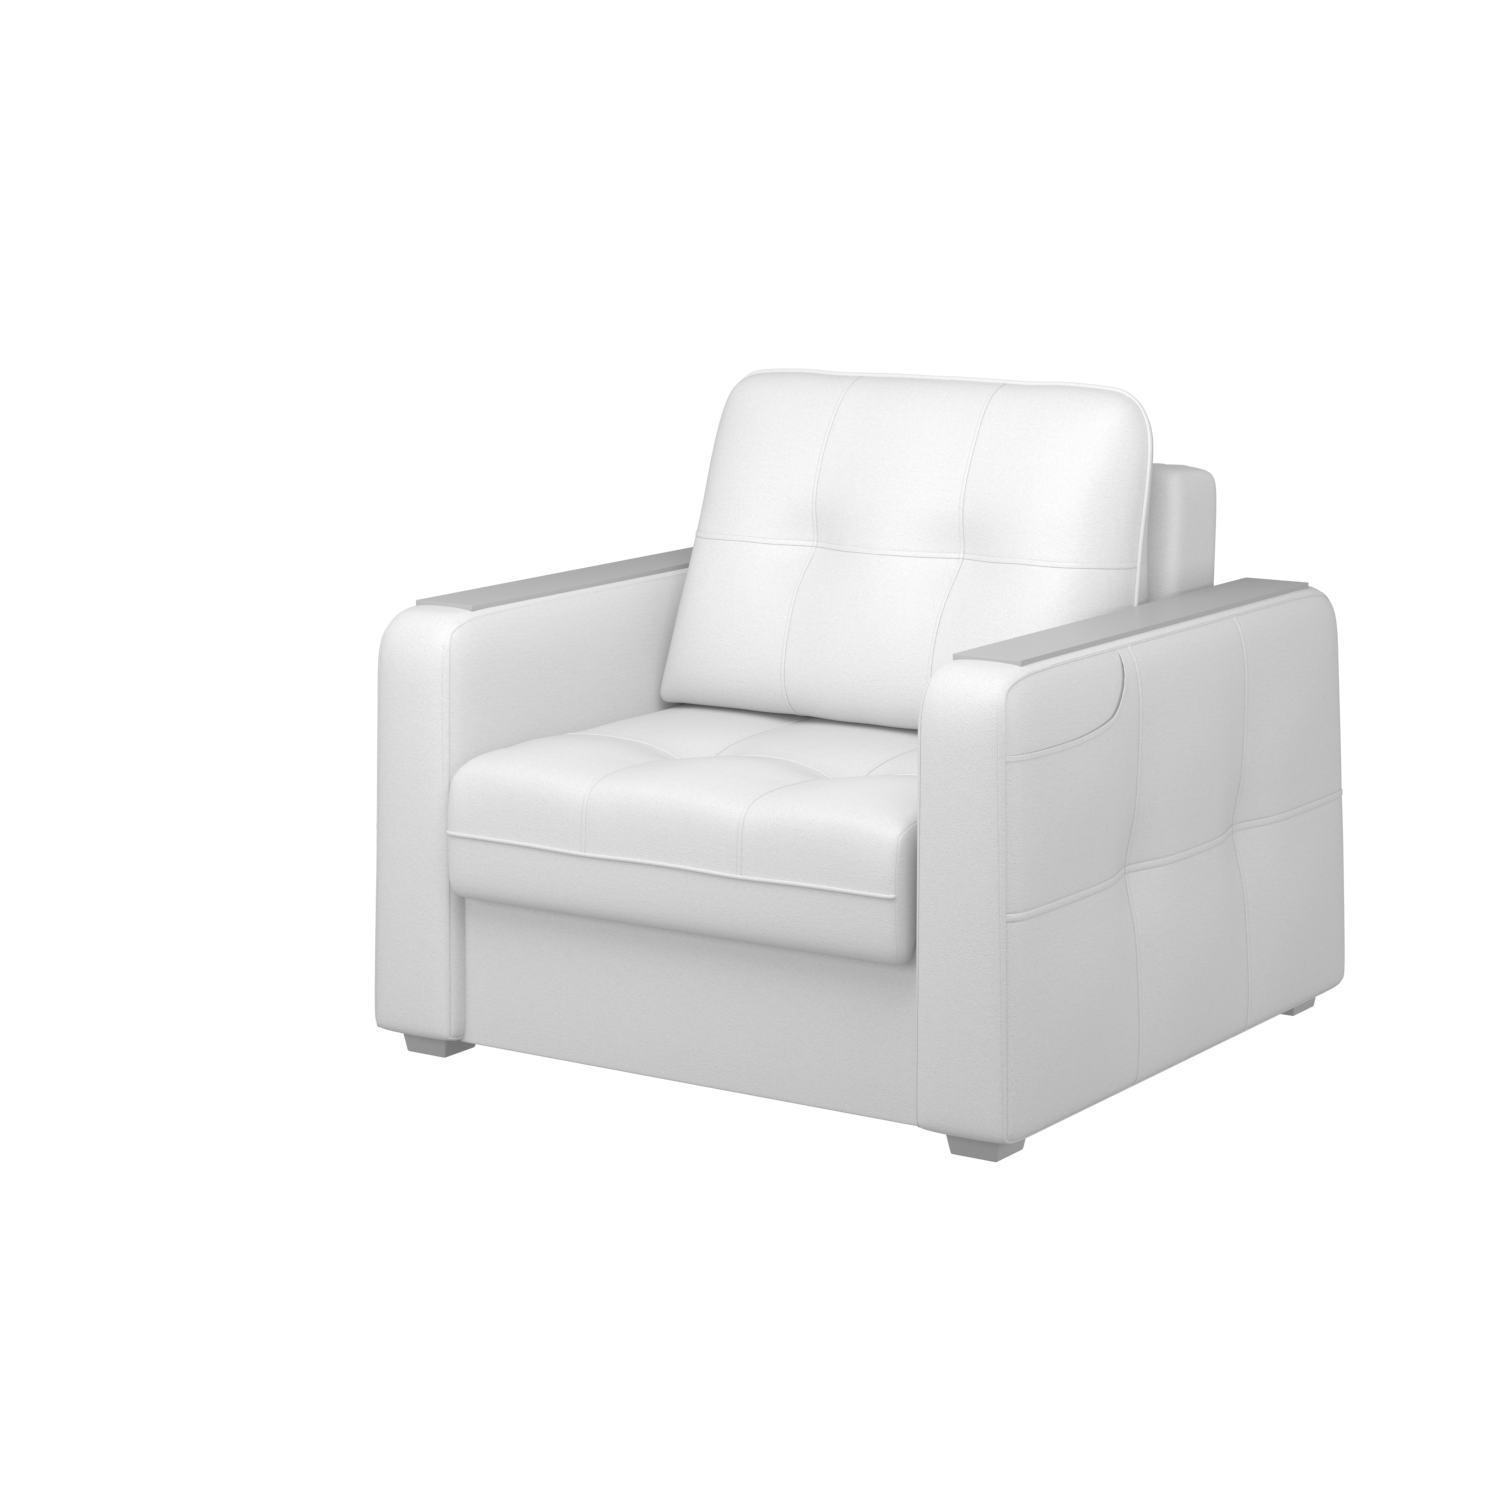 Мягкое кресло с ящиком Киль-3, кКЛ01.кш890.890у